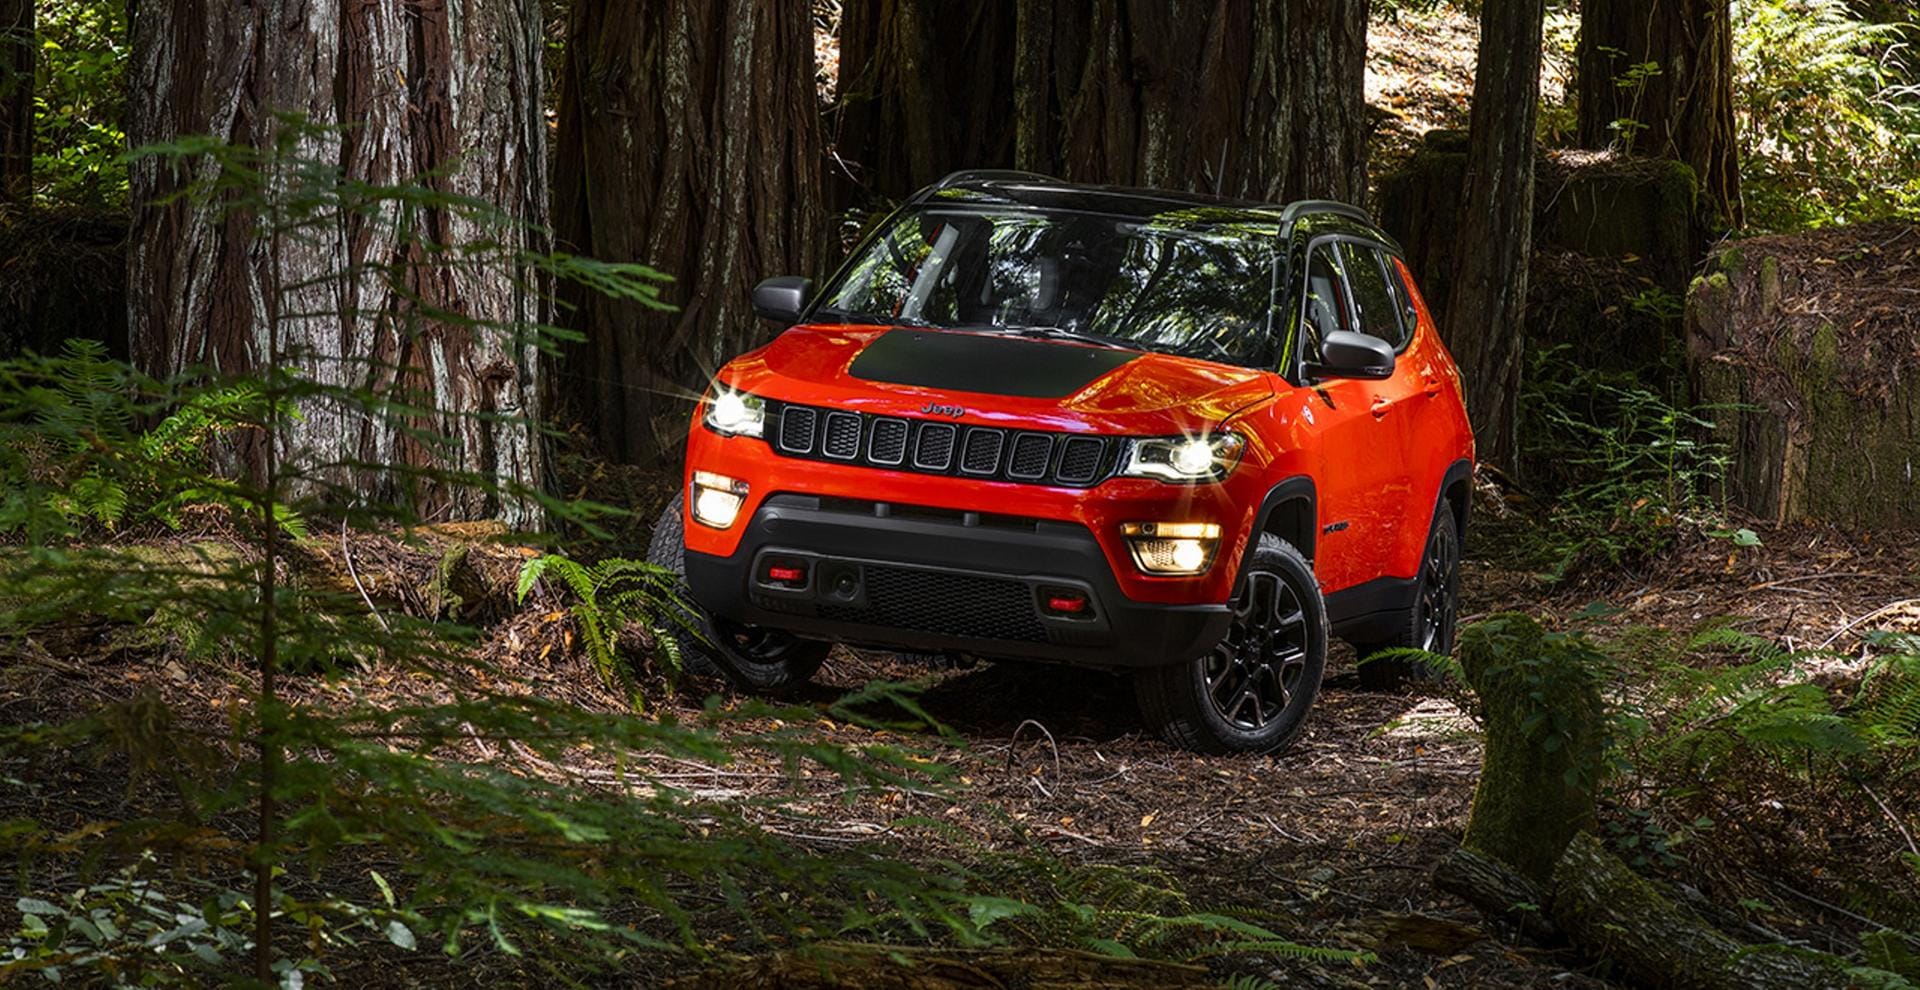 Mit dem neuen Compass will die Traditionsmarke Jeep in der Klasse der kompakten SUV eine wichtigere Rolle spielen als bisher.